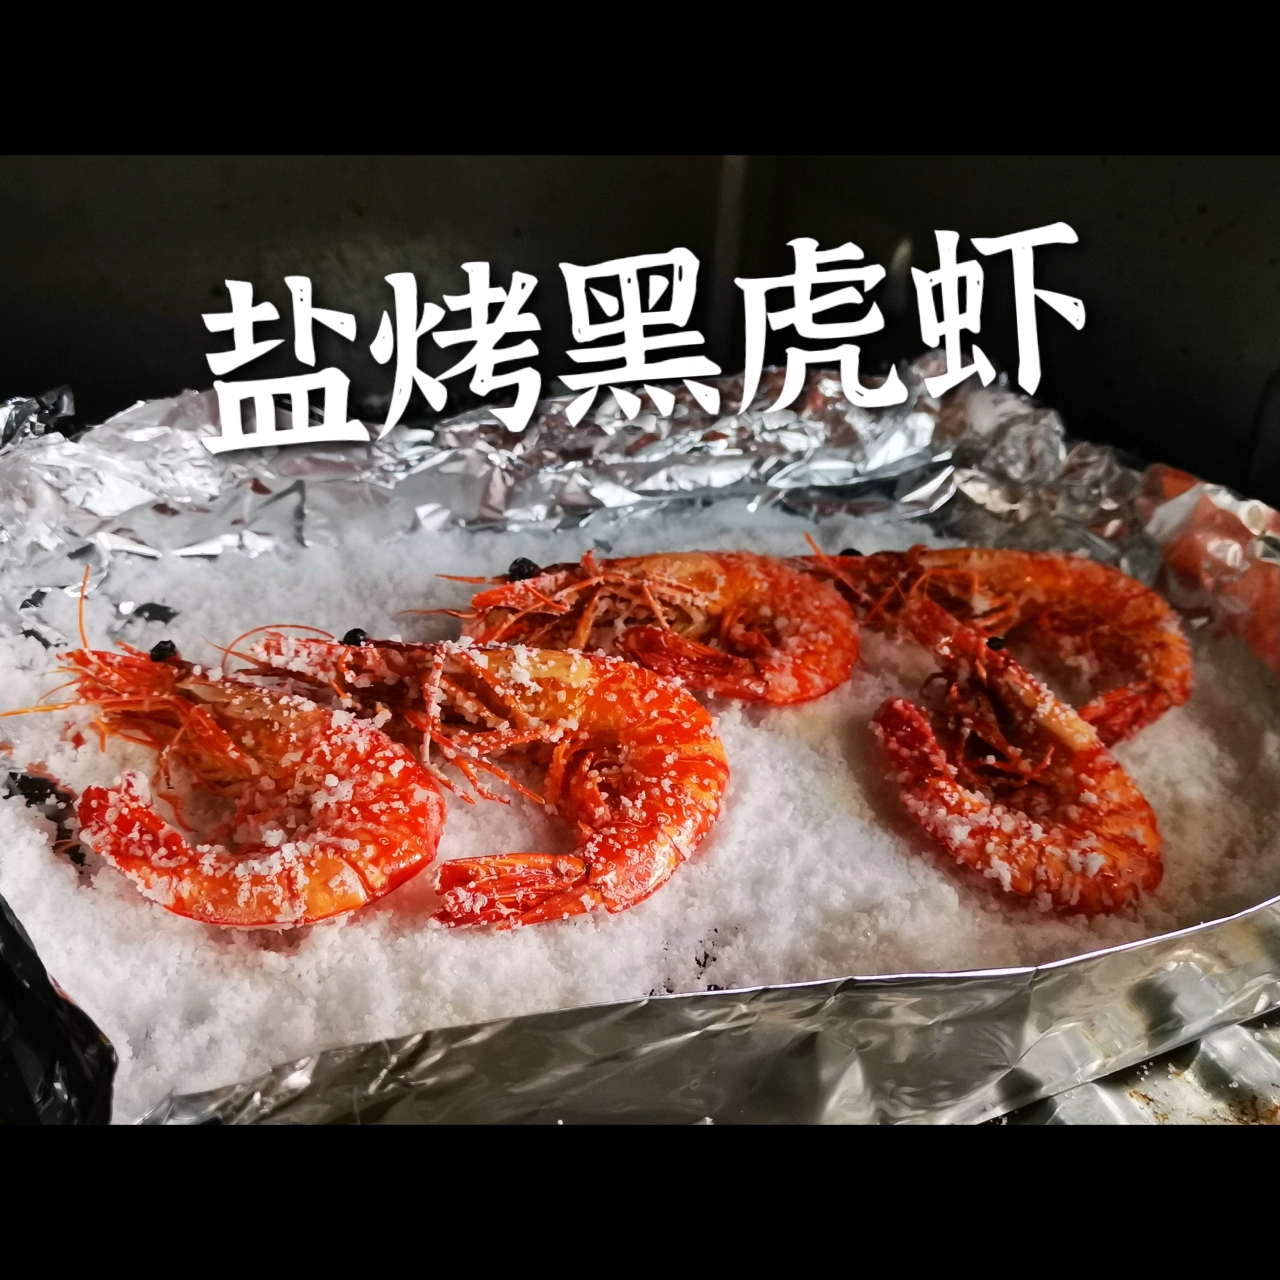 盐烤黑虎虾🦐🦐🦐原汁原味 三步搞定一道硬菜😄